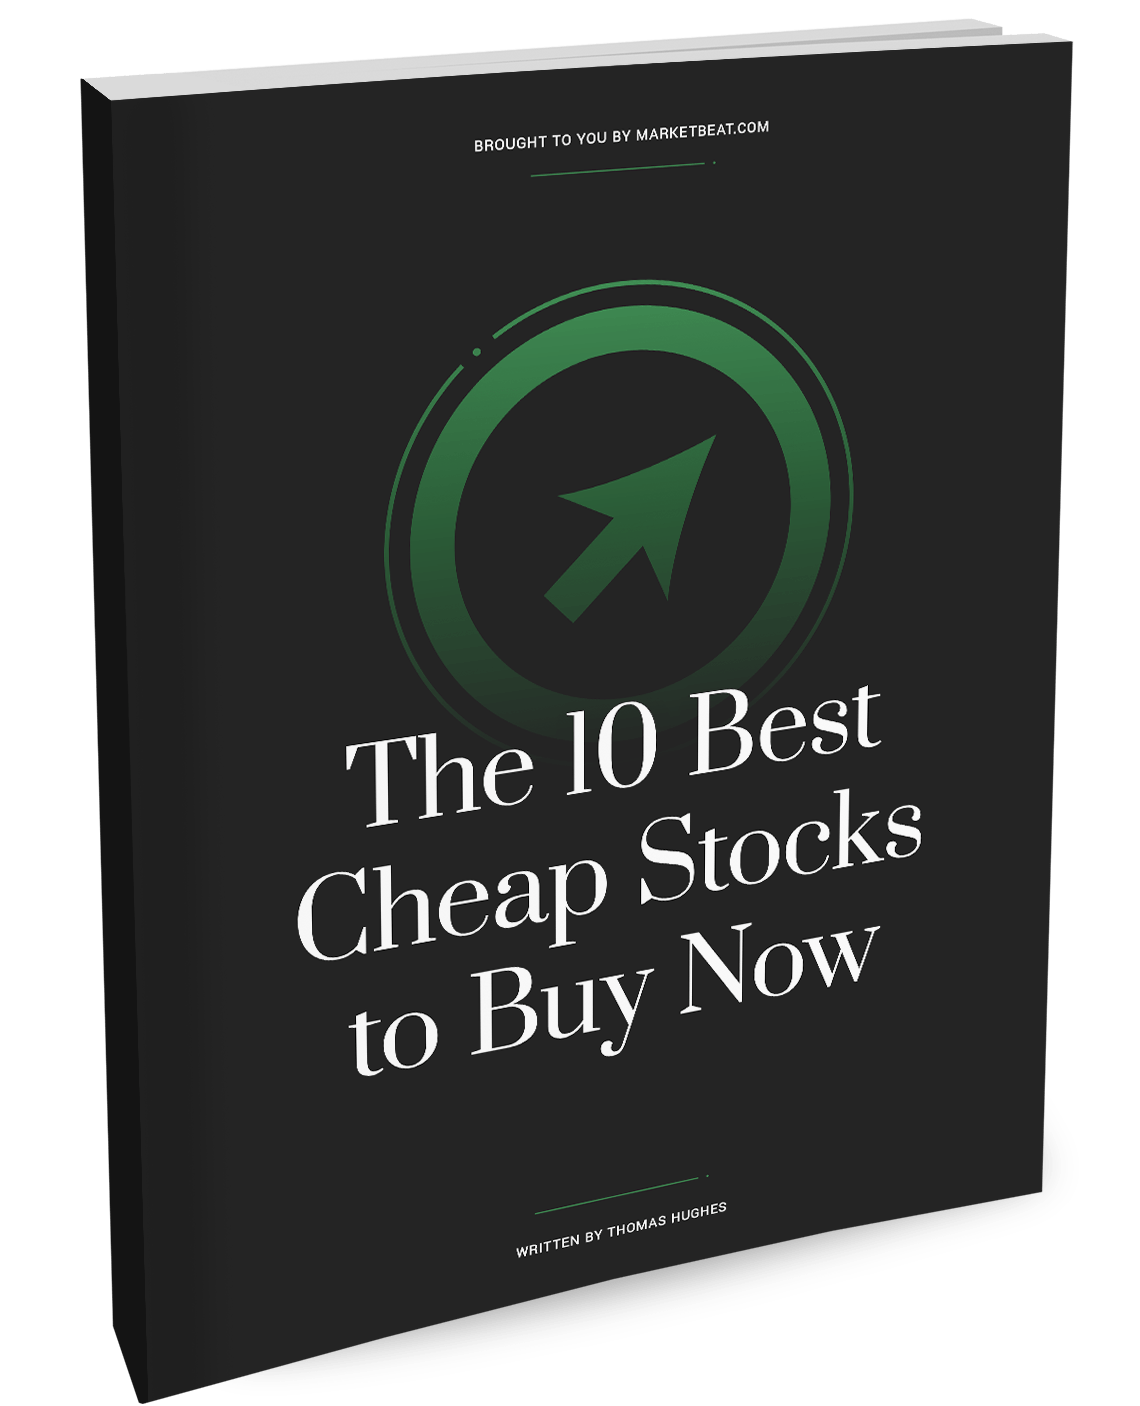 立即购买的 10 只最便宜的股票封面